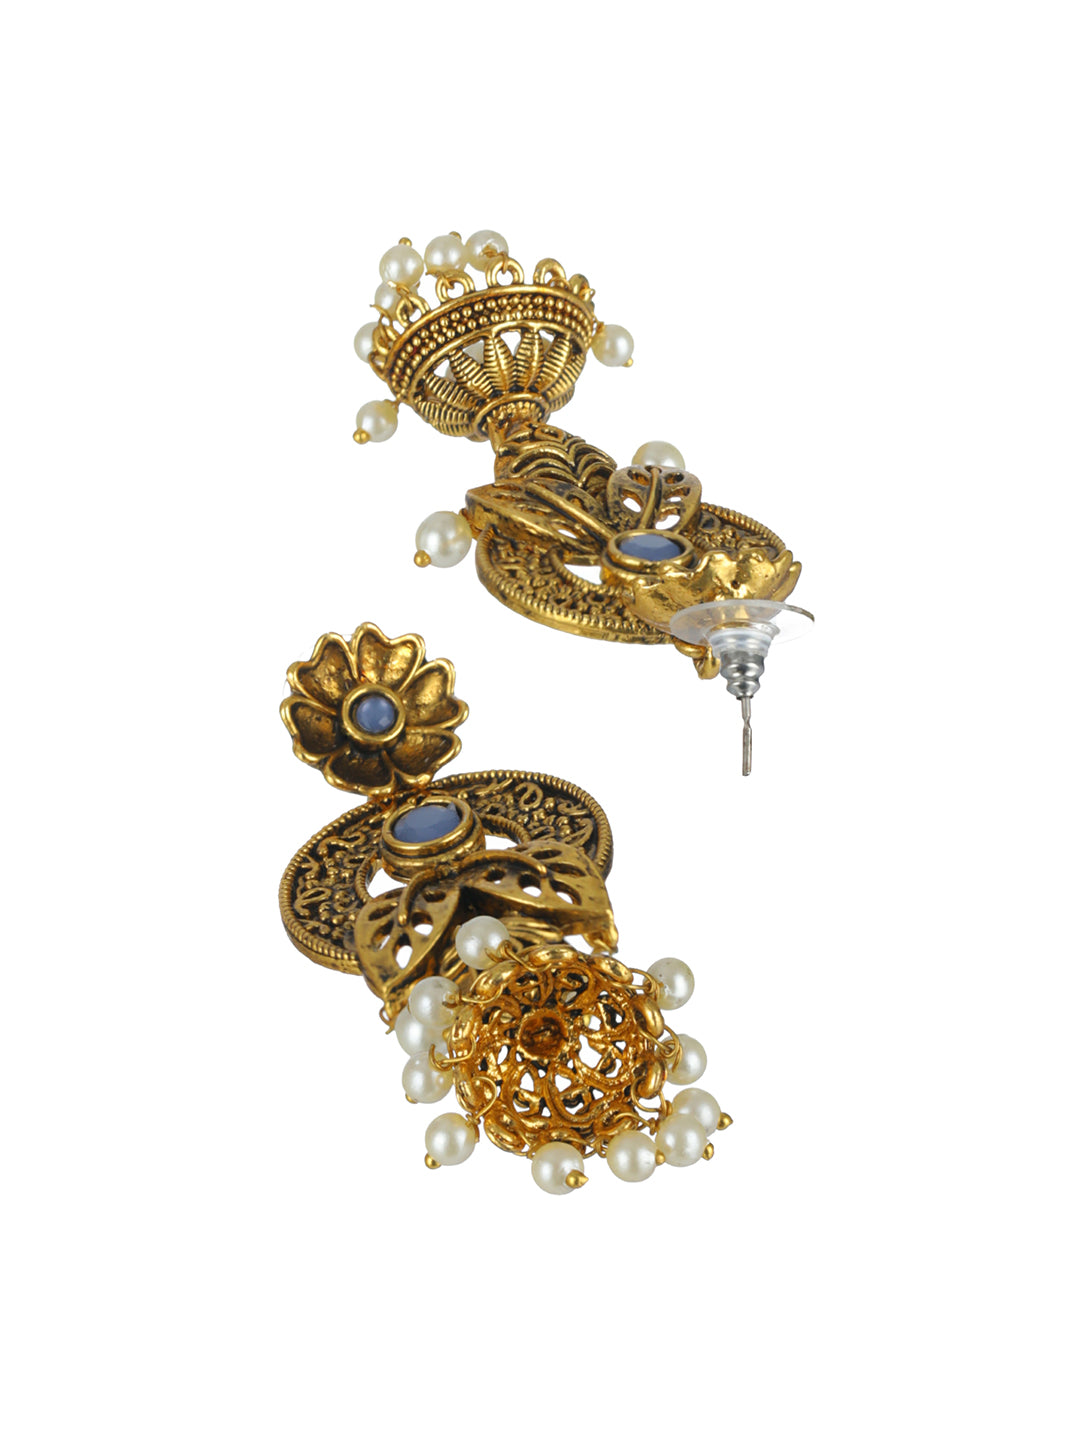 Priyaasi Blue Floral Leaf Gold-Plated Jhumka Earrings